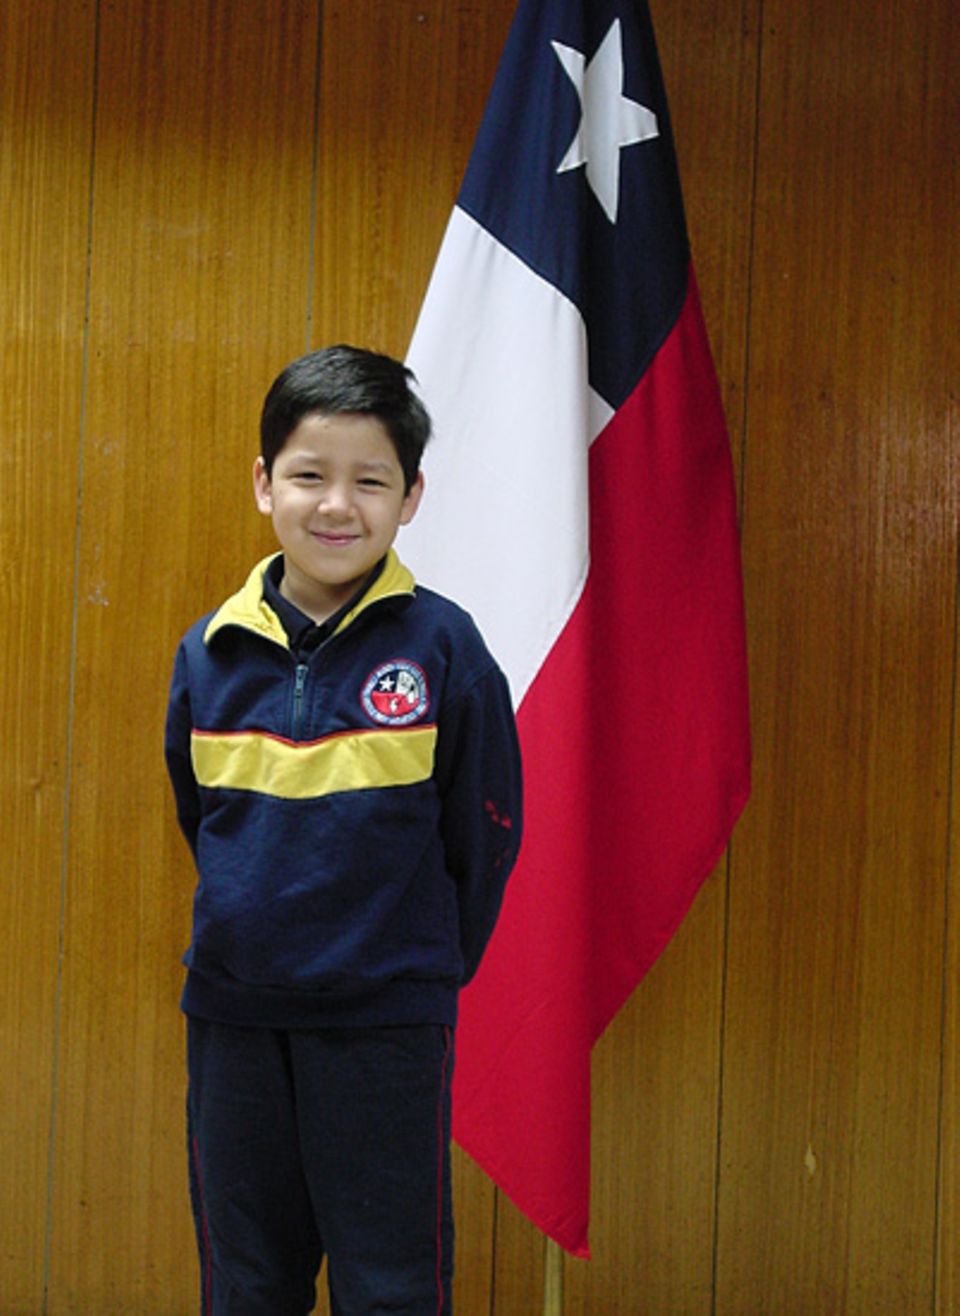 Fernando vor der Flagge seines Heimatlandes Chile